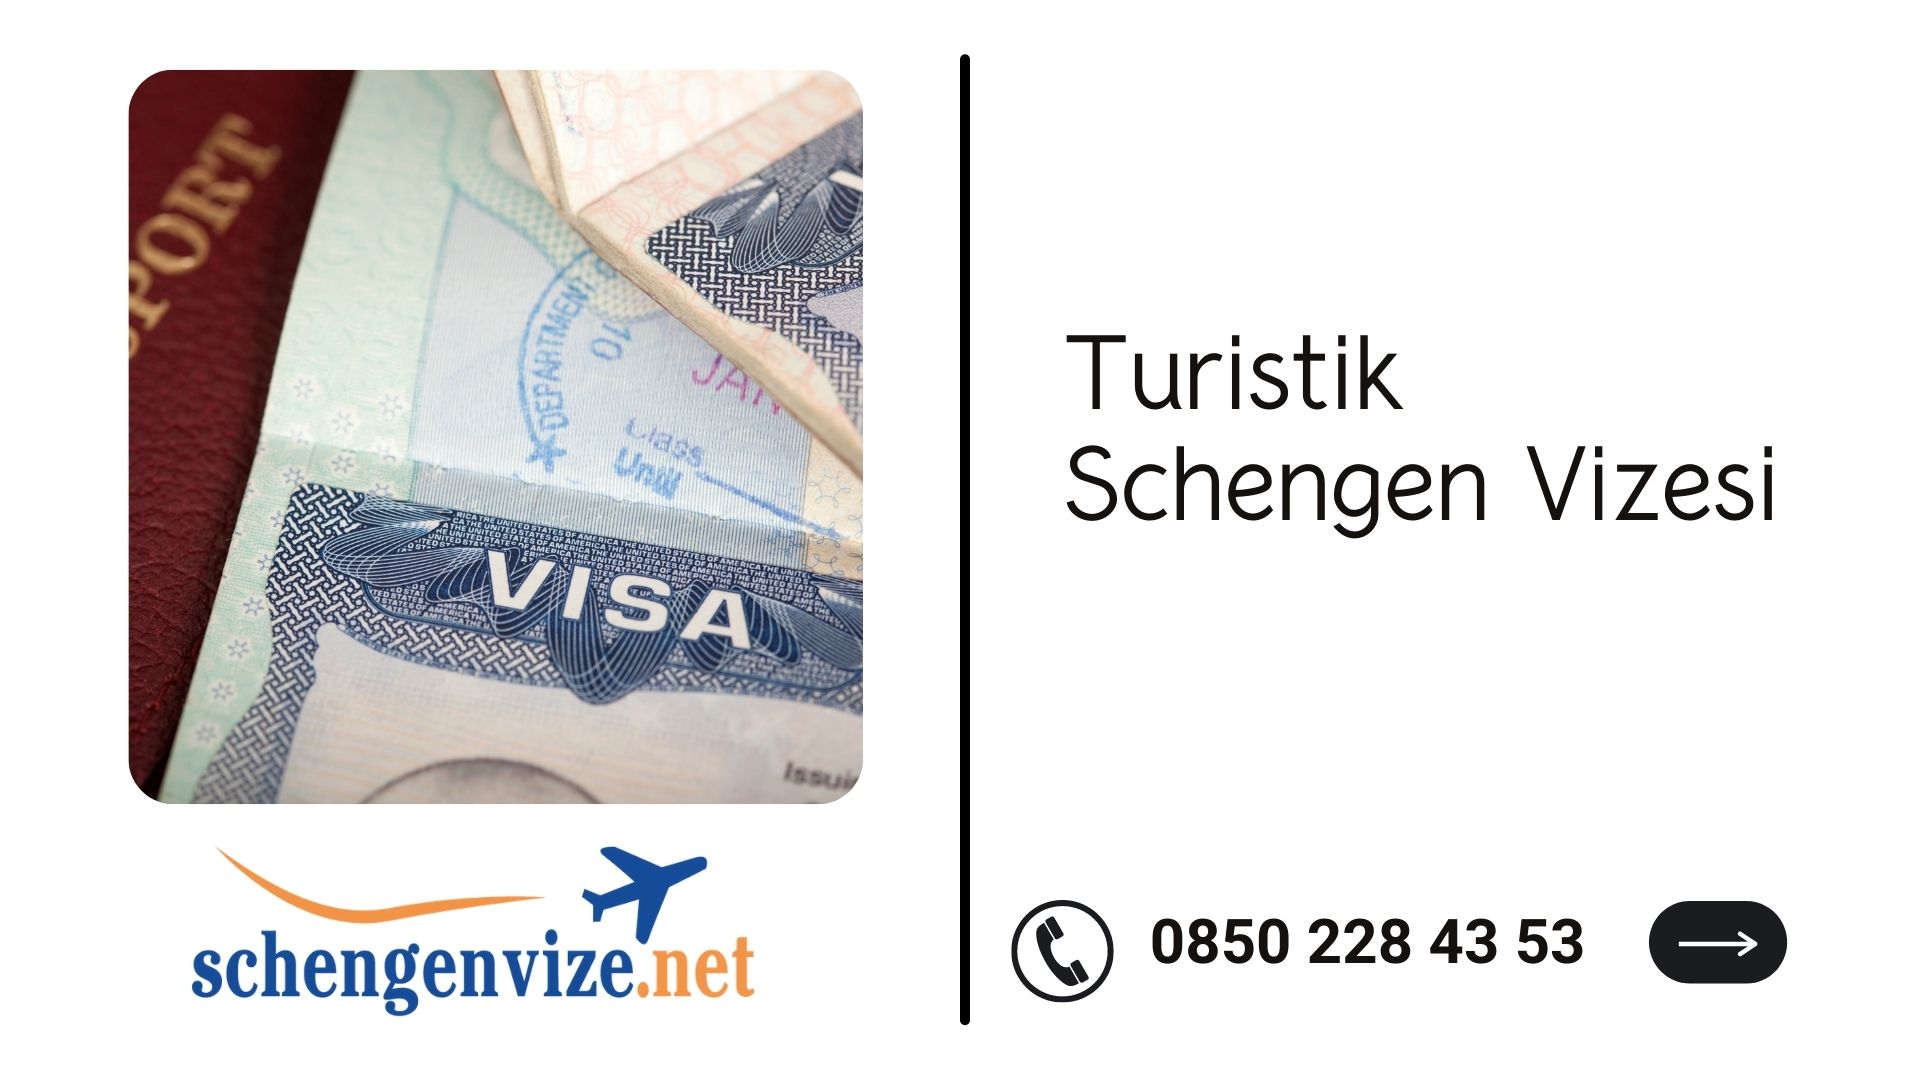 Turistik Schengen Vizesi